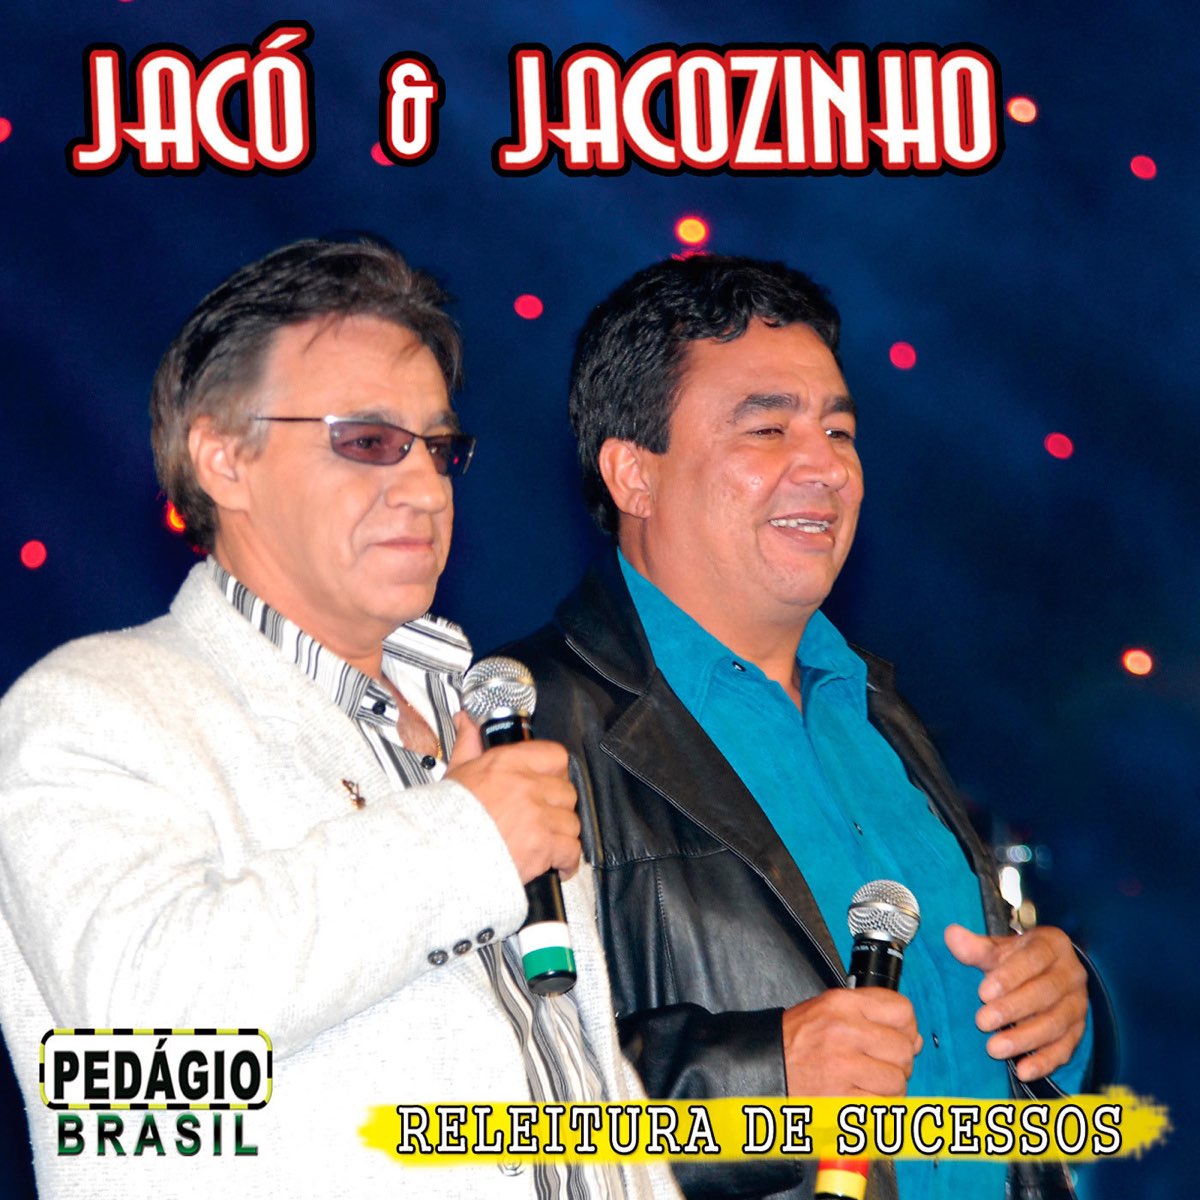 Jacó e Jacozinho - Ladrão De Terra - Ouvir Música